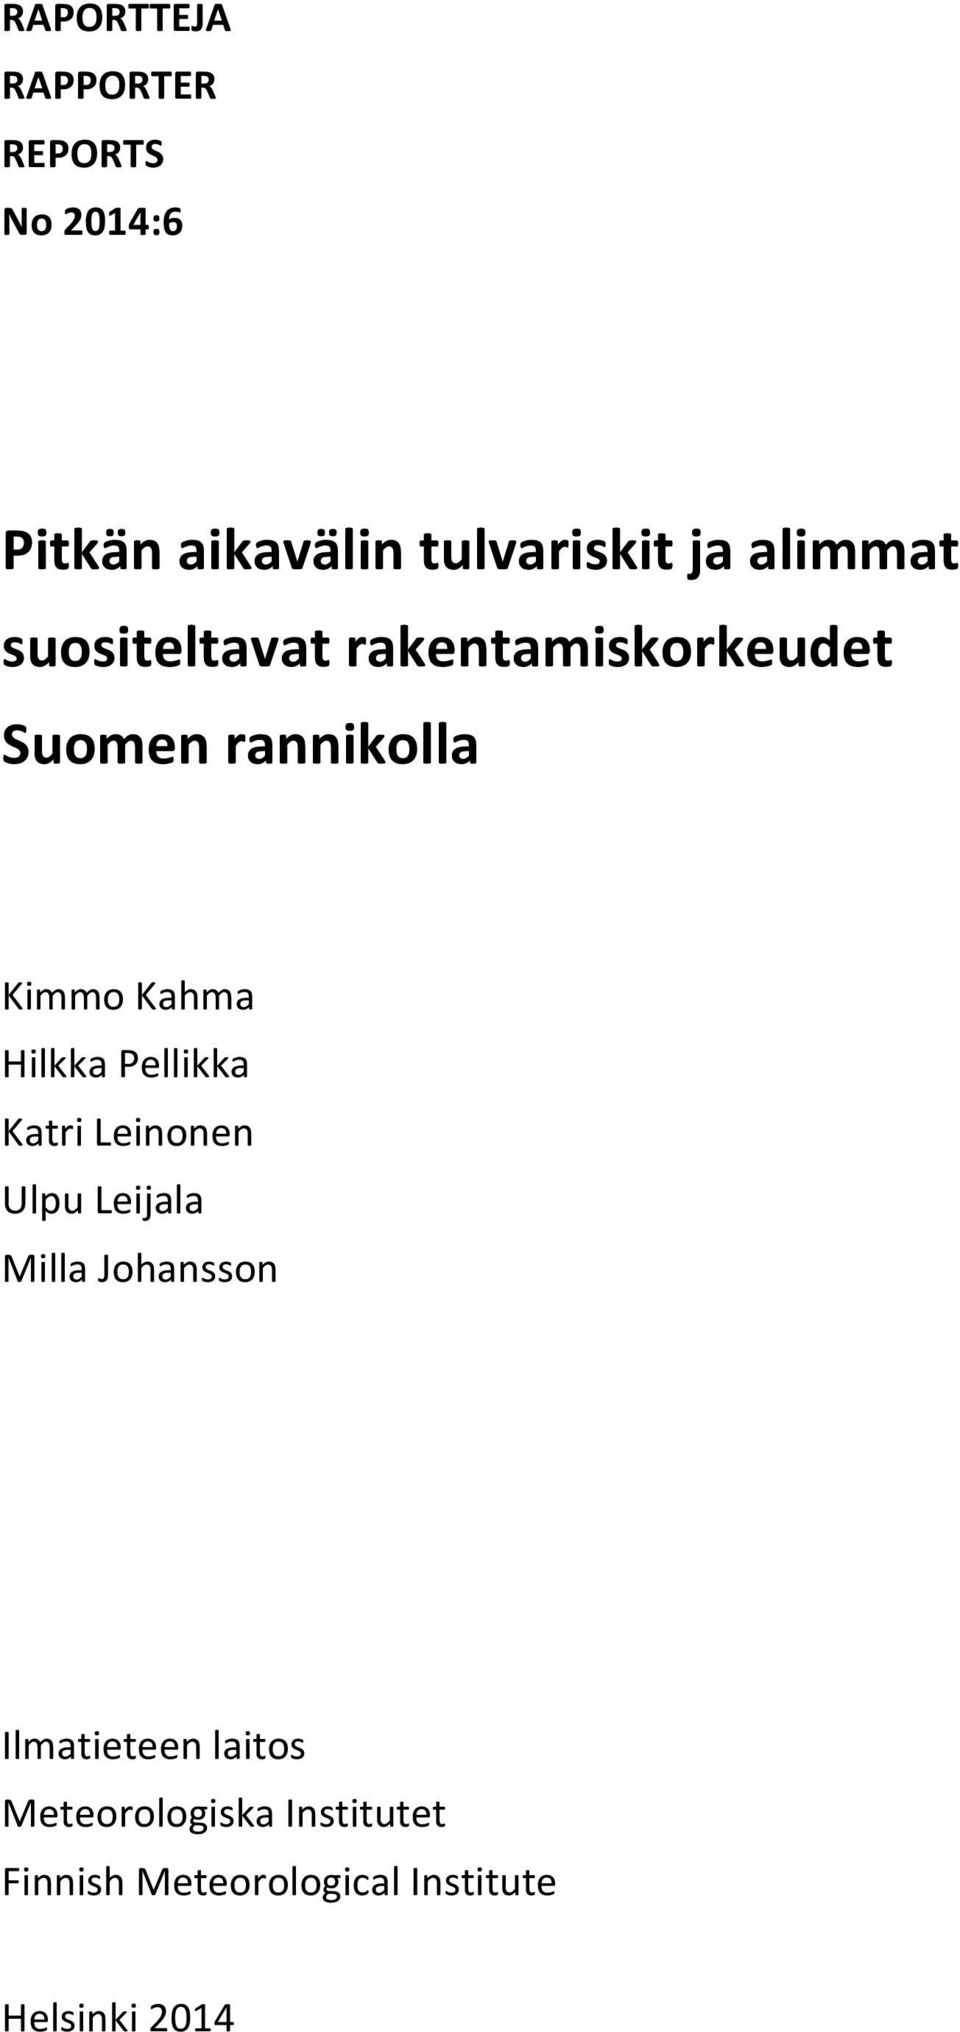 Hilkka Pellikka Katri Leinonen Ulpu Leijala Milla Johansson Ilmatieteen